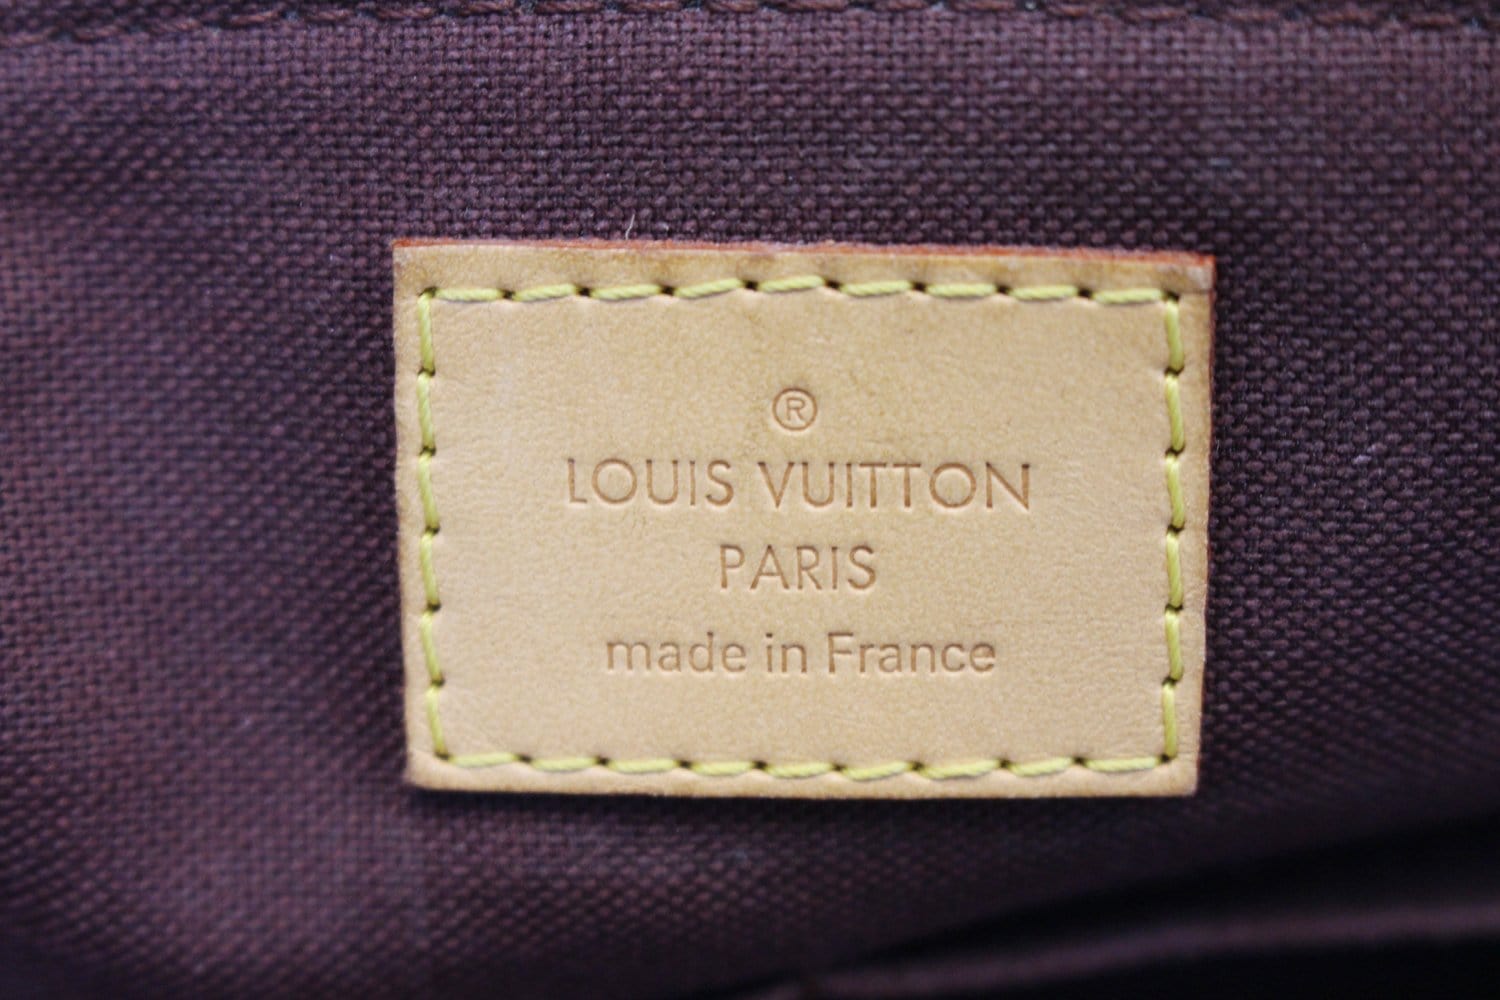 Authentic Louis Vuitton Turenne PM Monogram (SR0196) 2 Way Satchel